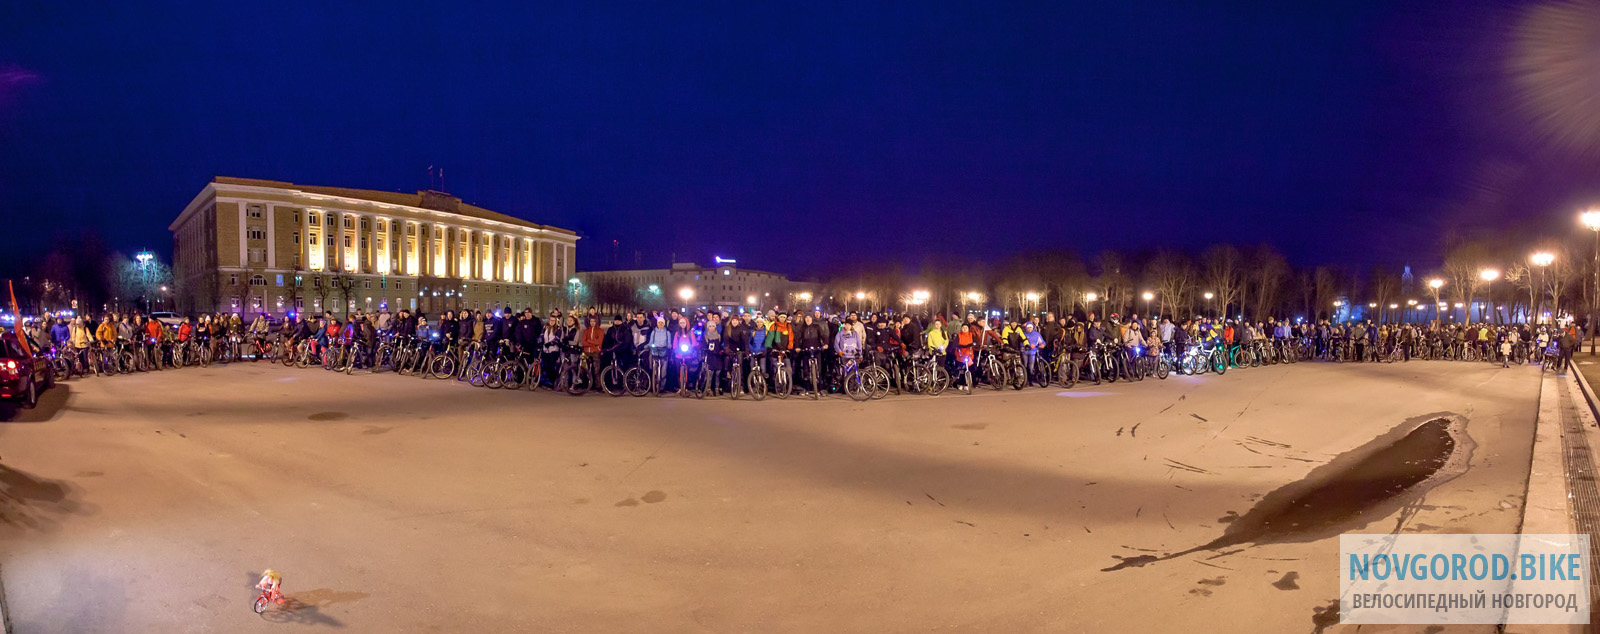 Велосветлячки в Великом Новгороде